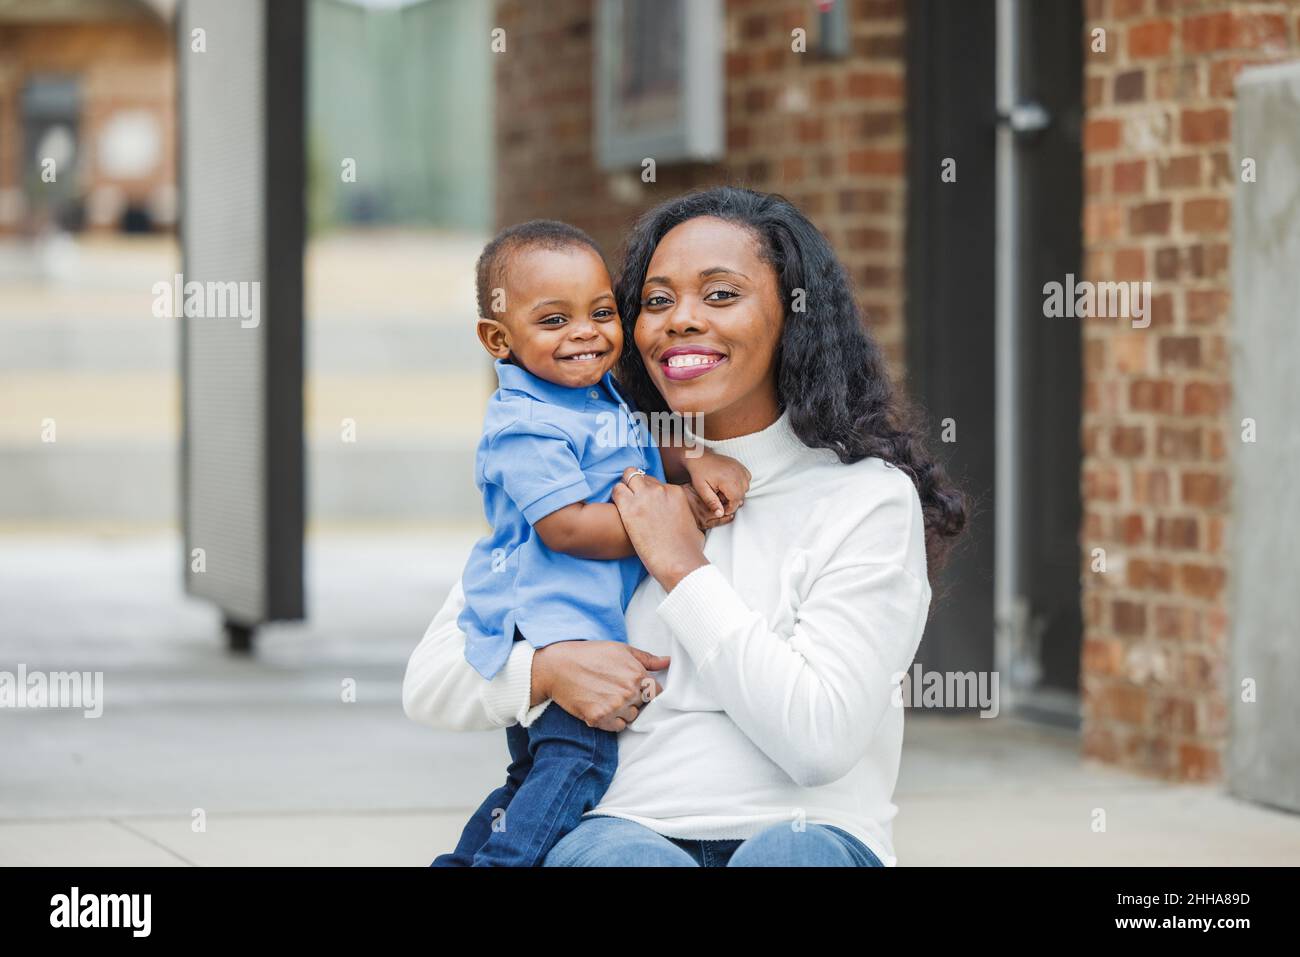 Eine wunderschöne afroamerikanische Mutter, die auf einer Treppe im Freien sitzt und ihren Sohn im Kleinkindalter umarmt und beide lächeln und sind glücklich Stockfoto